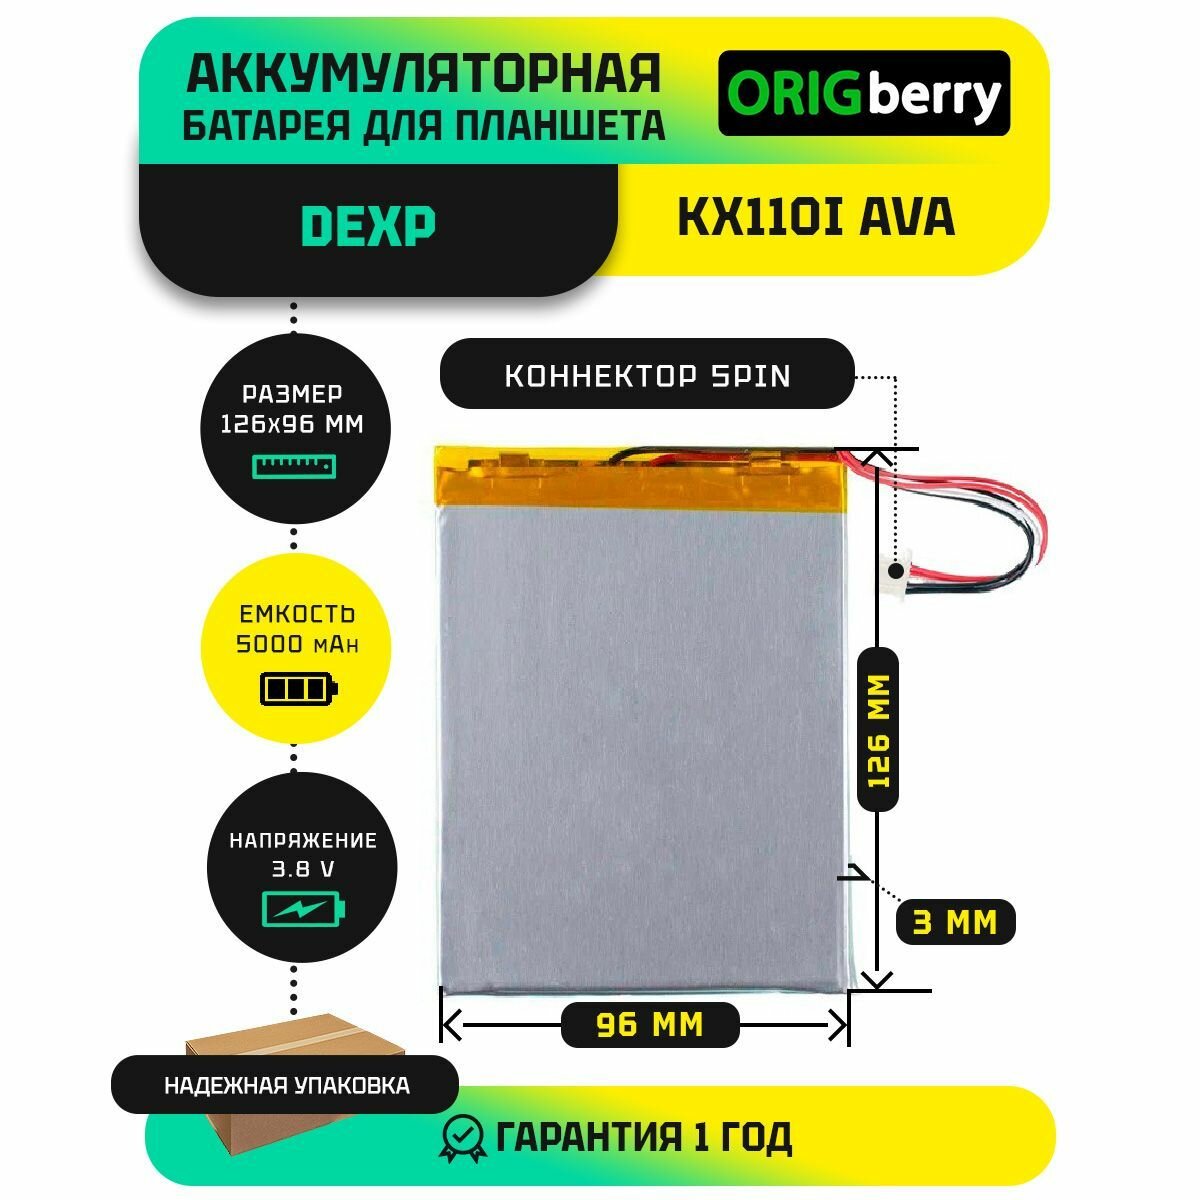 Аккумулятор для планшета Dexp Ursus KX110i AVA 3,8 V / 5000 mAh / 126мм x 96мм x 3мм / коннектор 5 PIN